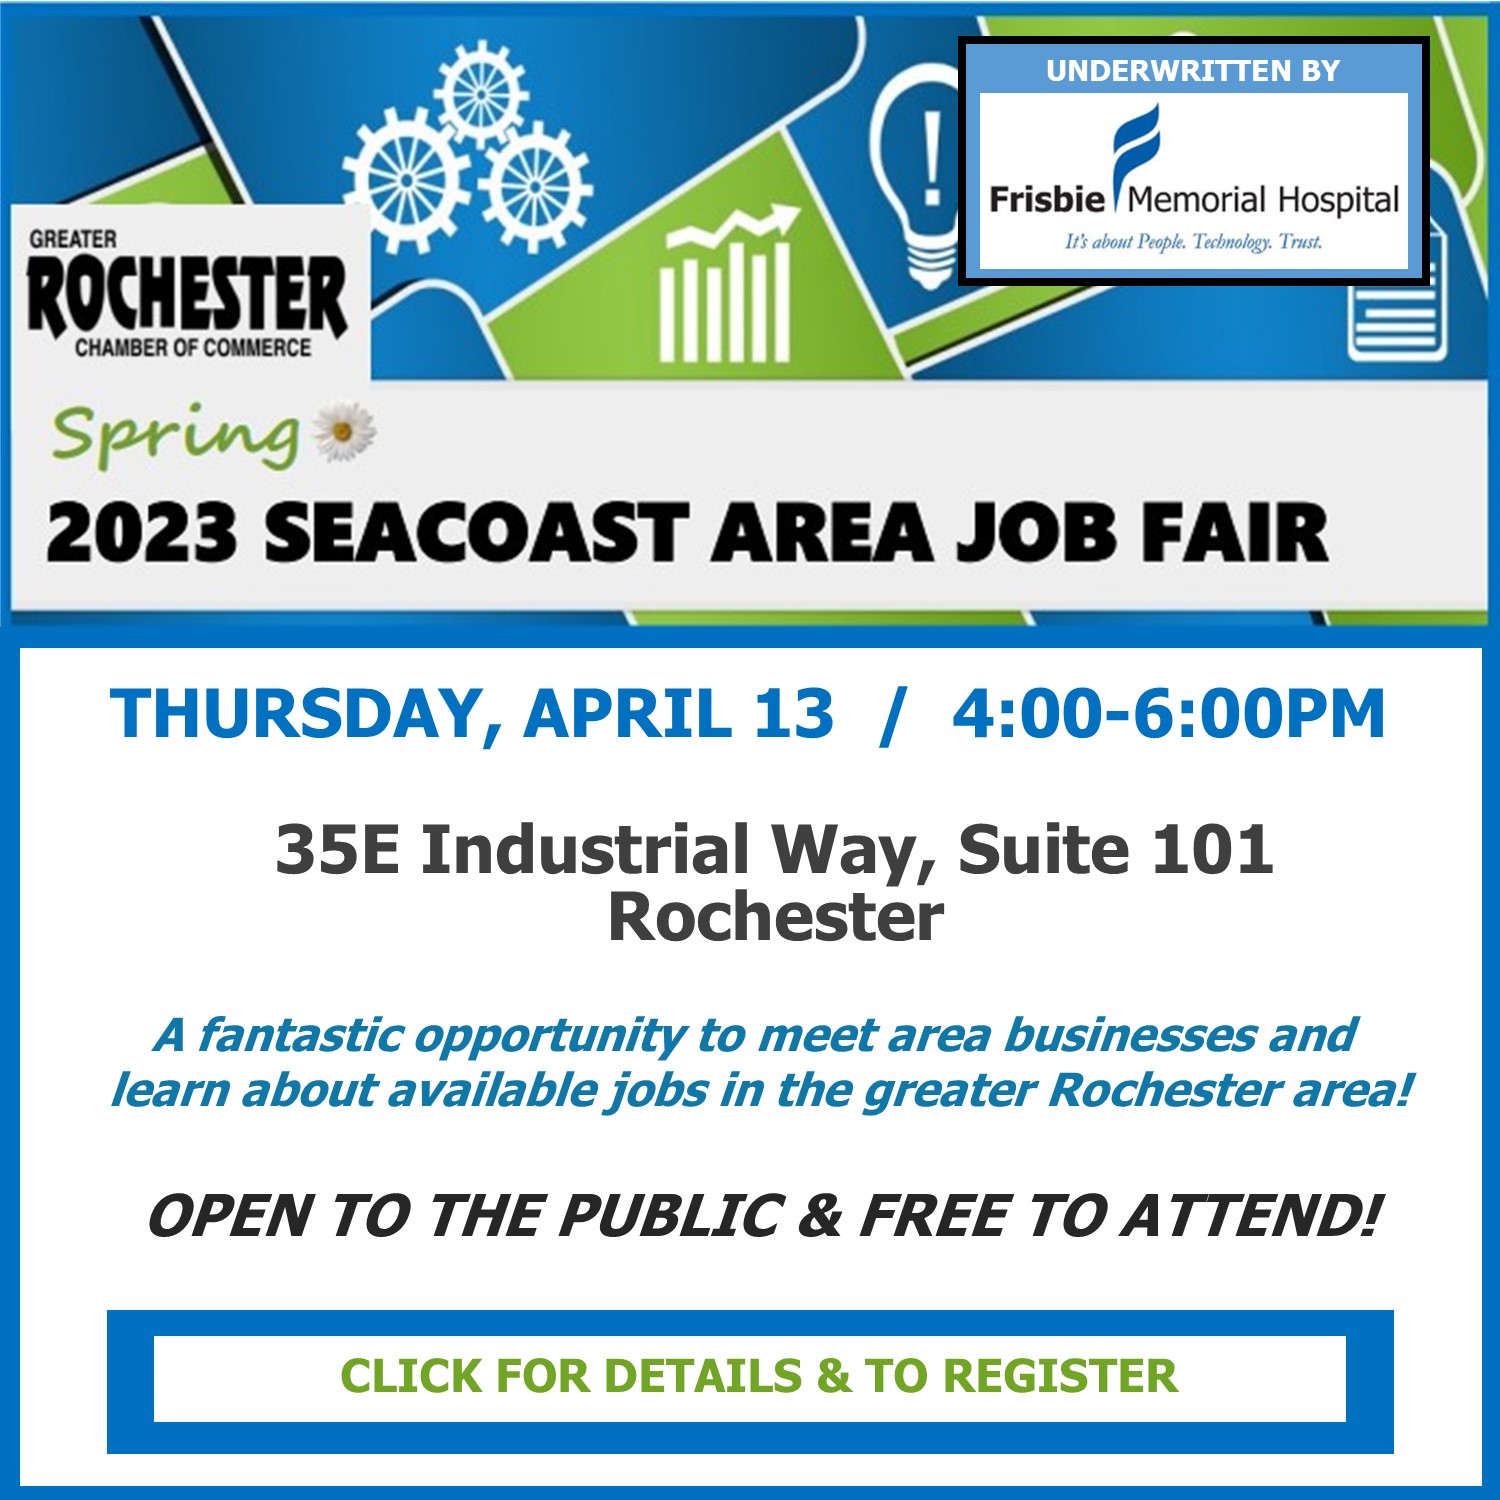 Spring 2023 Seacoast Area Job Fair